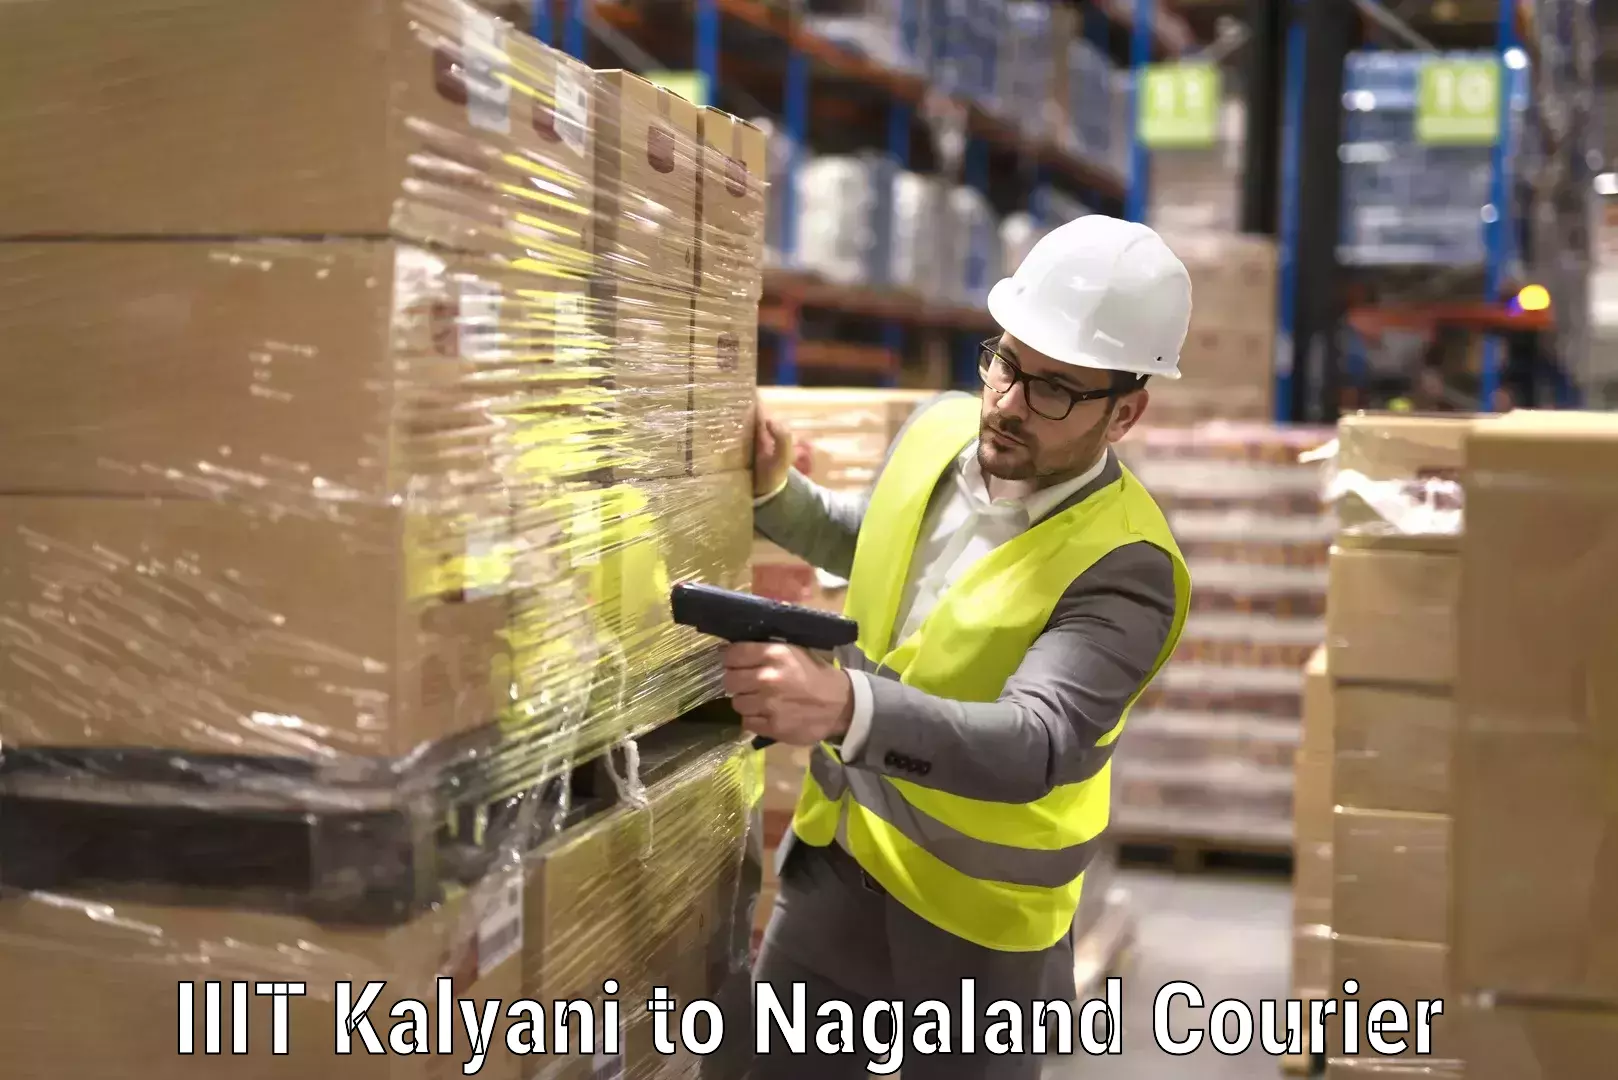 Furniture transport experts IIIT Kalyani to Nagaland